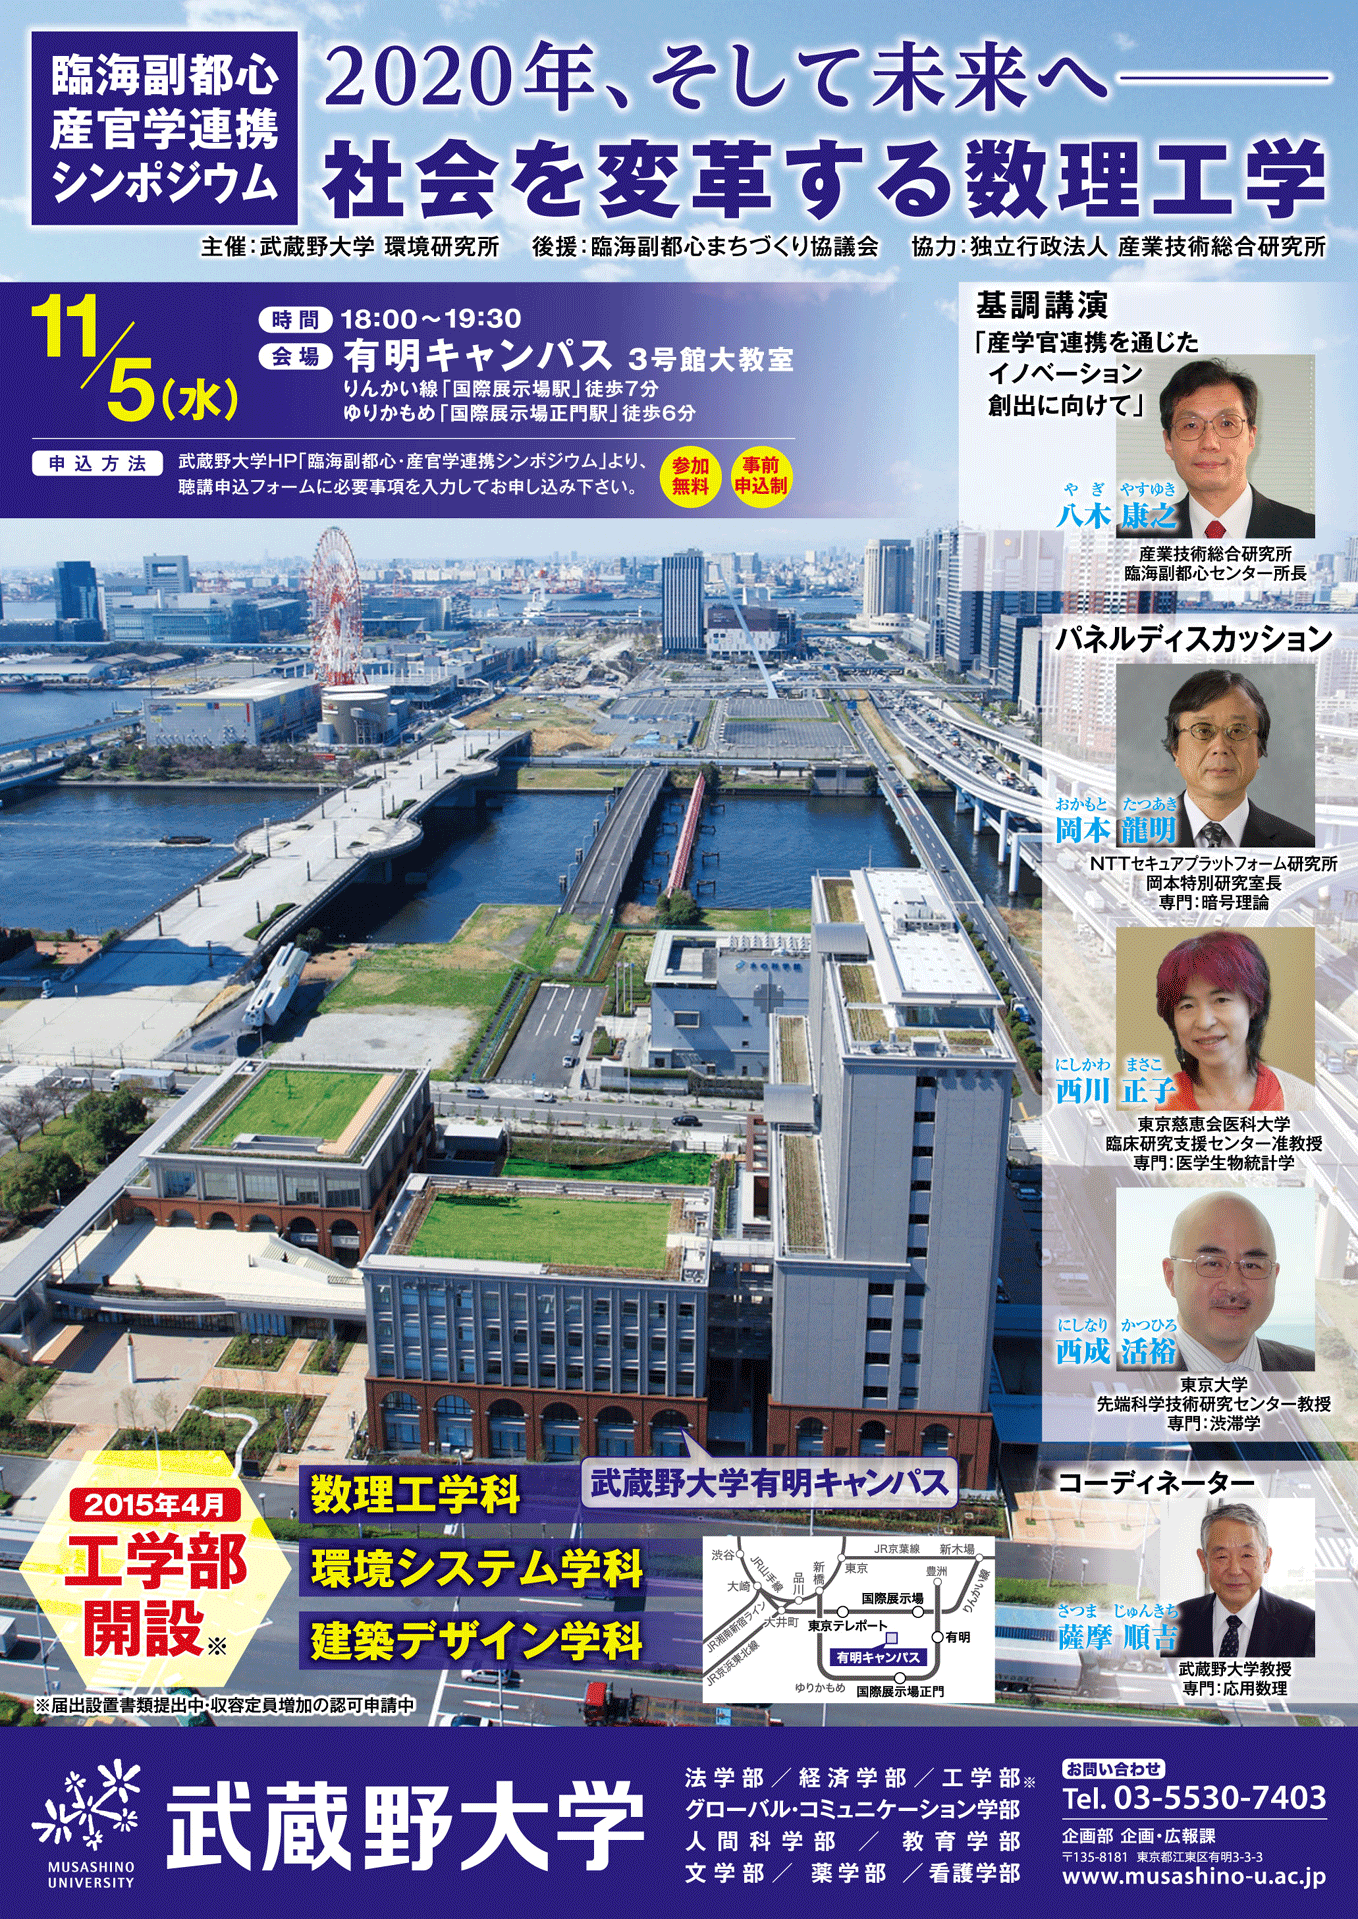 武蔵野大学が11月5日に臨海副都心・産官学連携シンポジウム「2020年、そして未来へ― 社会を変革する数理工学」を開催